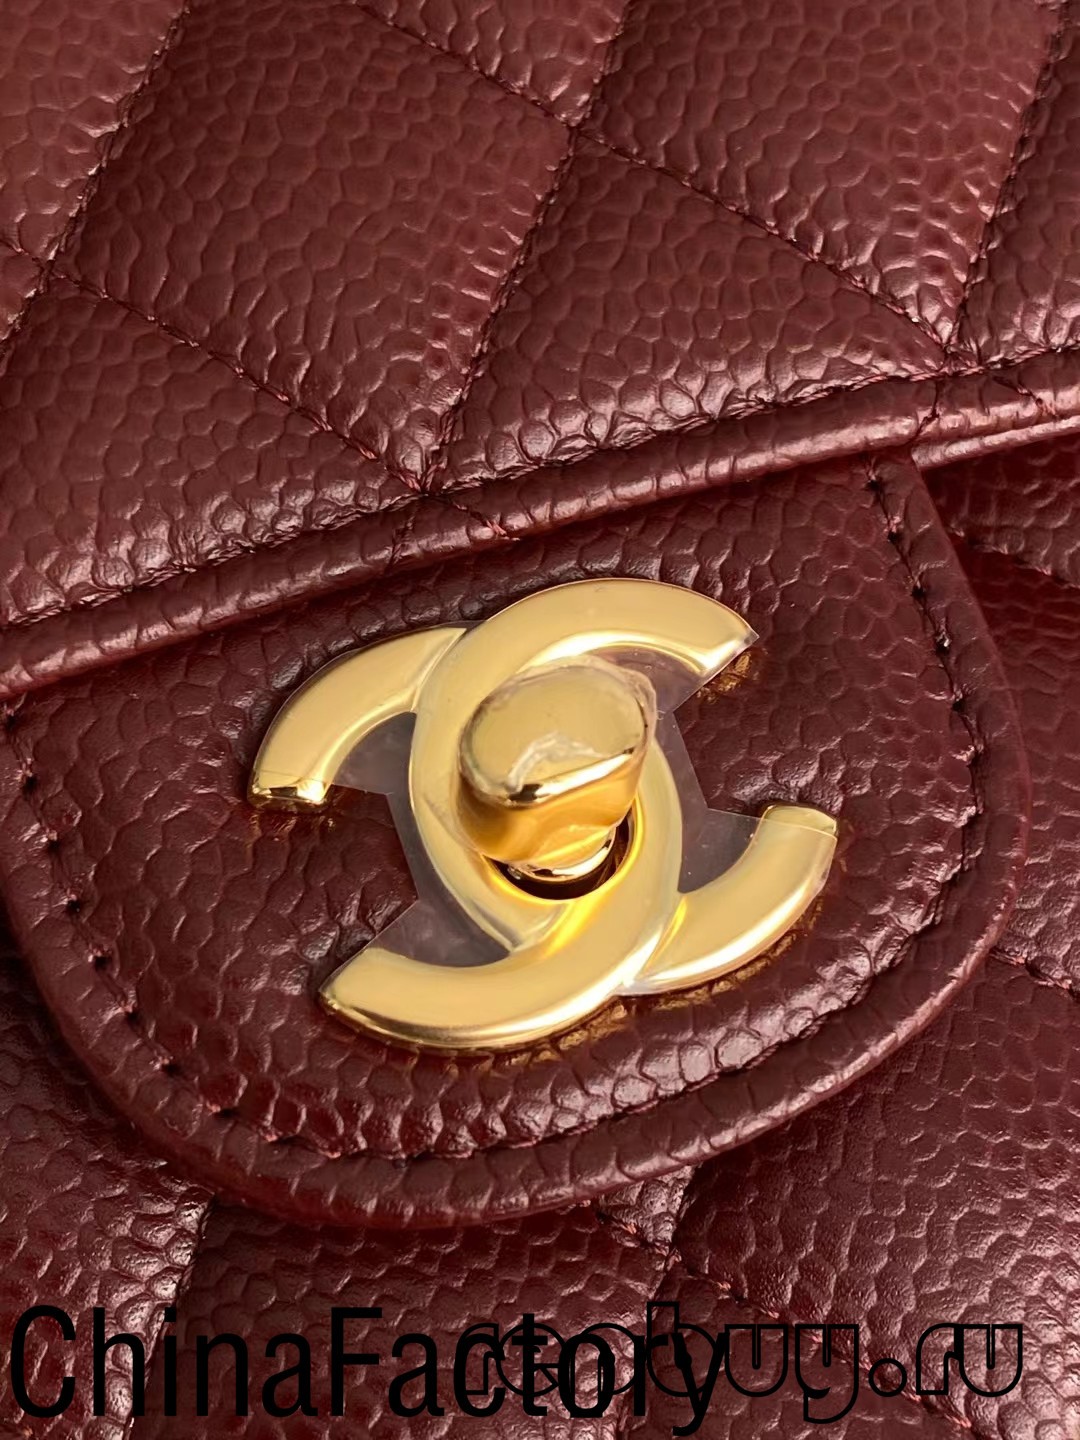 Wêr kin ik keapje de bêste replika tassen yn Austraalje? (2022 update) -Bêste kwaliteit Fake Louis Vuitton Bag Online Store, Replika ûntwerper tas ru